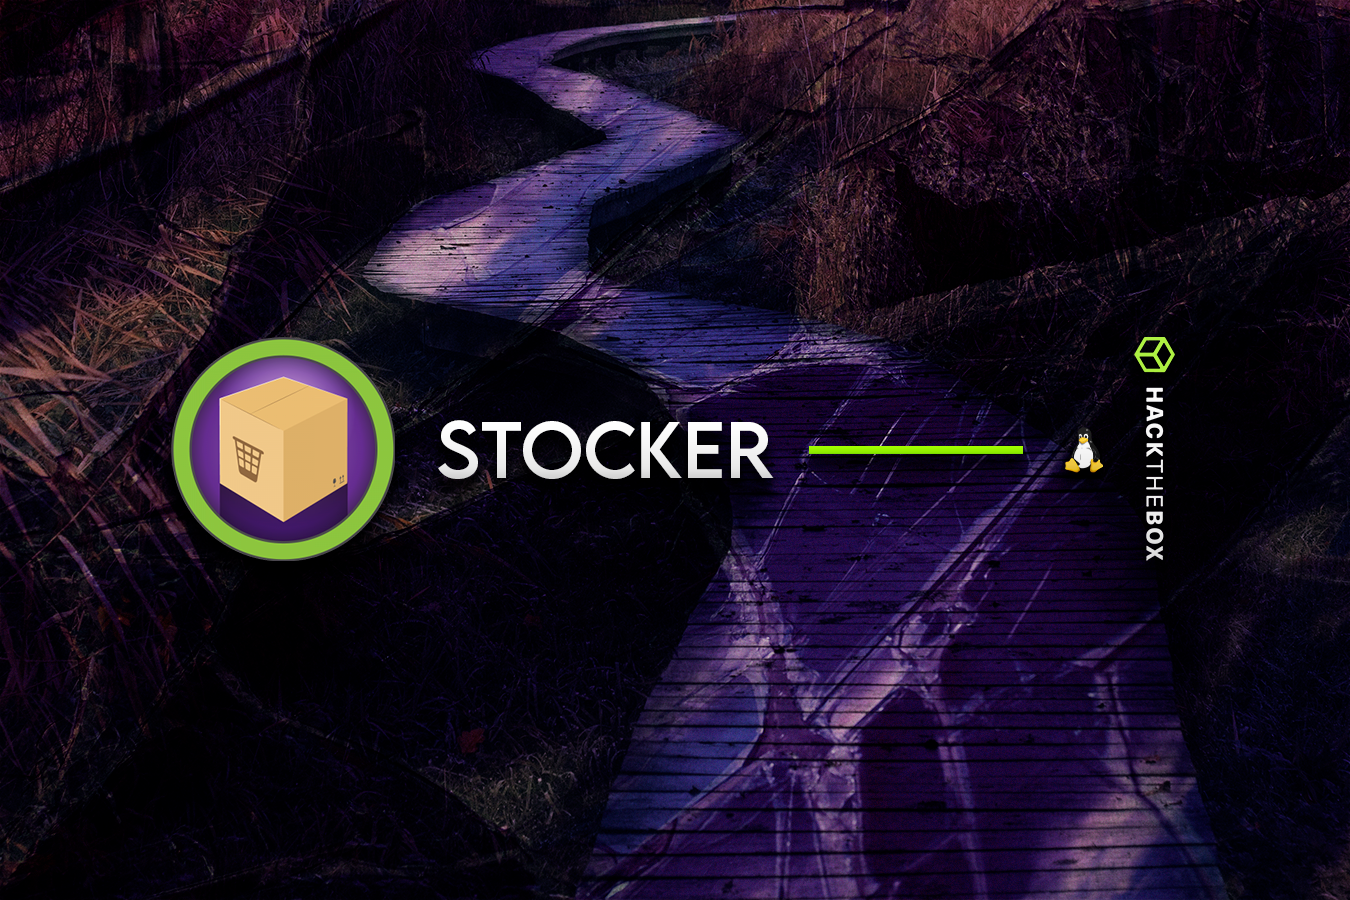 HackTheBox - Stocker